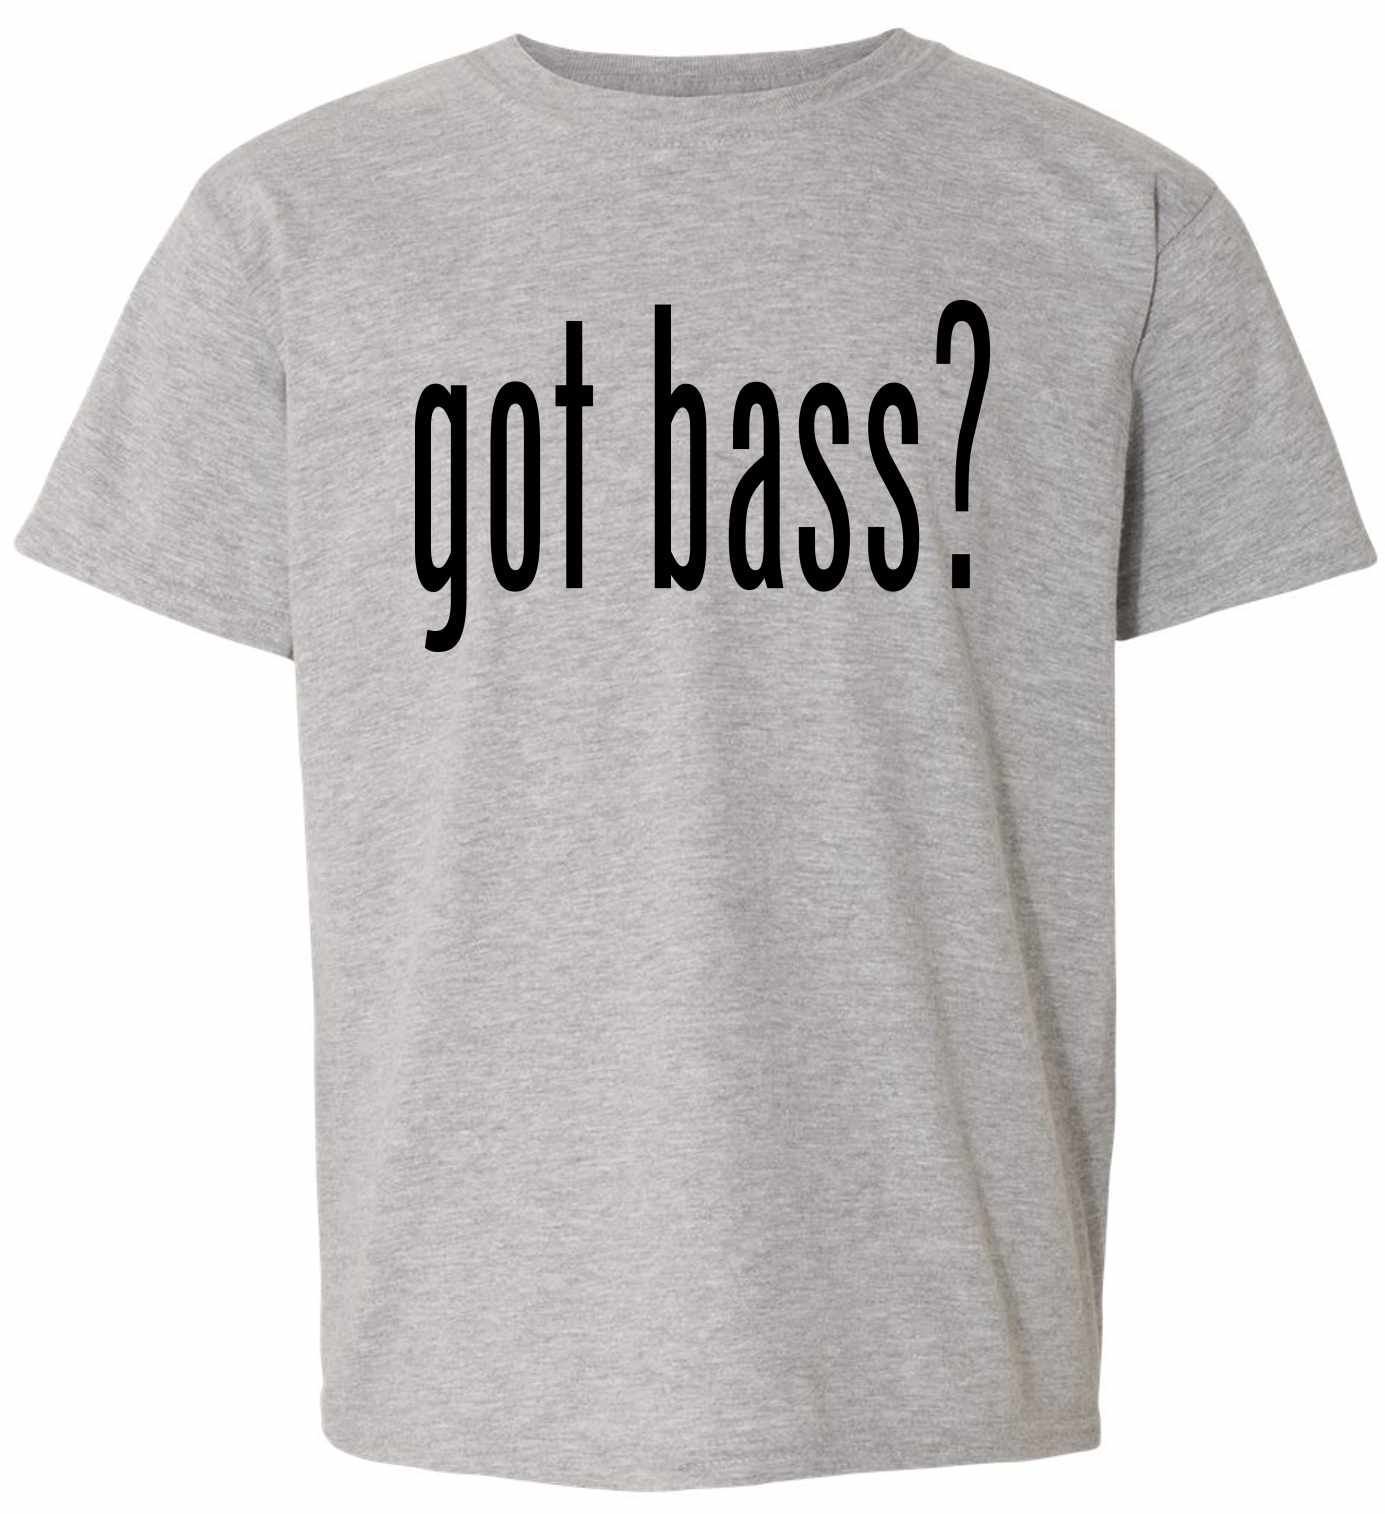 Got Bass? on Kids T-Shirt (#887-201)